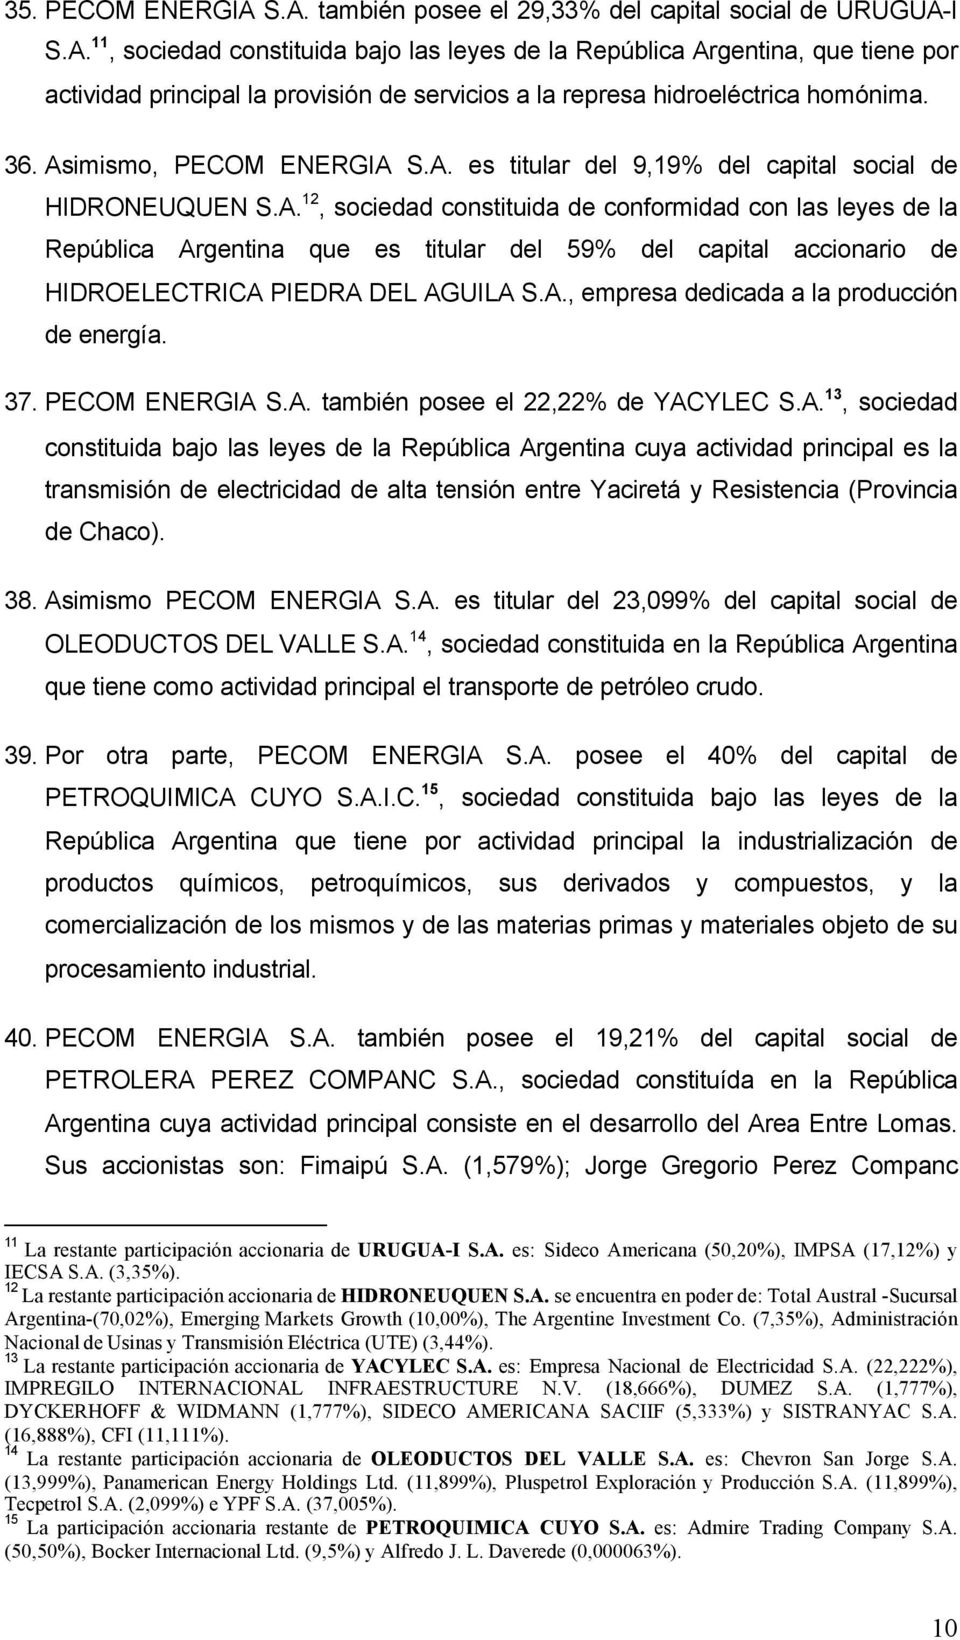 A., empresa dedicada a la producción de energía. 37. PECOM ENERGIA S.A. también posee el 22,22% de YACYLEC S.A. 13, sociedad constituida bajo las leyes de la República Argentina cuya actividad principal es la transmisión de electricidad de alta tensión entre Yaciretá y Resistencia (Provincia de Chaco).